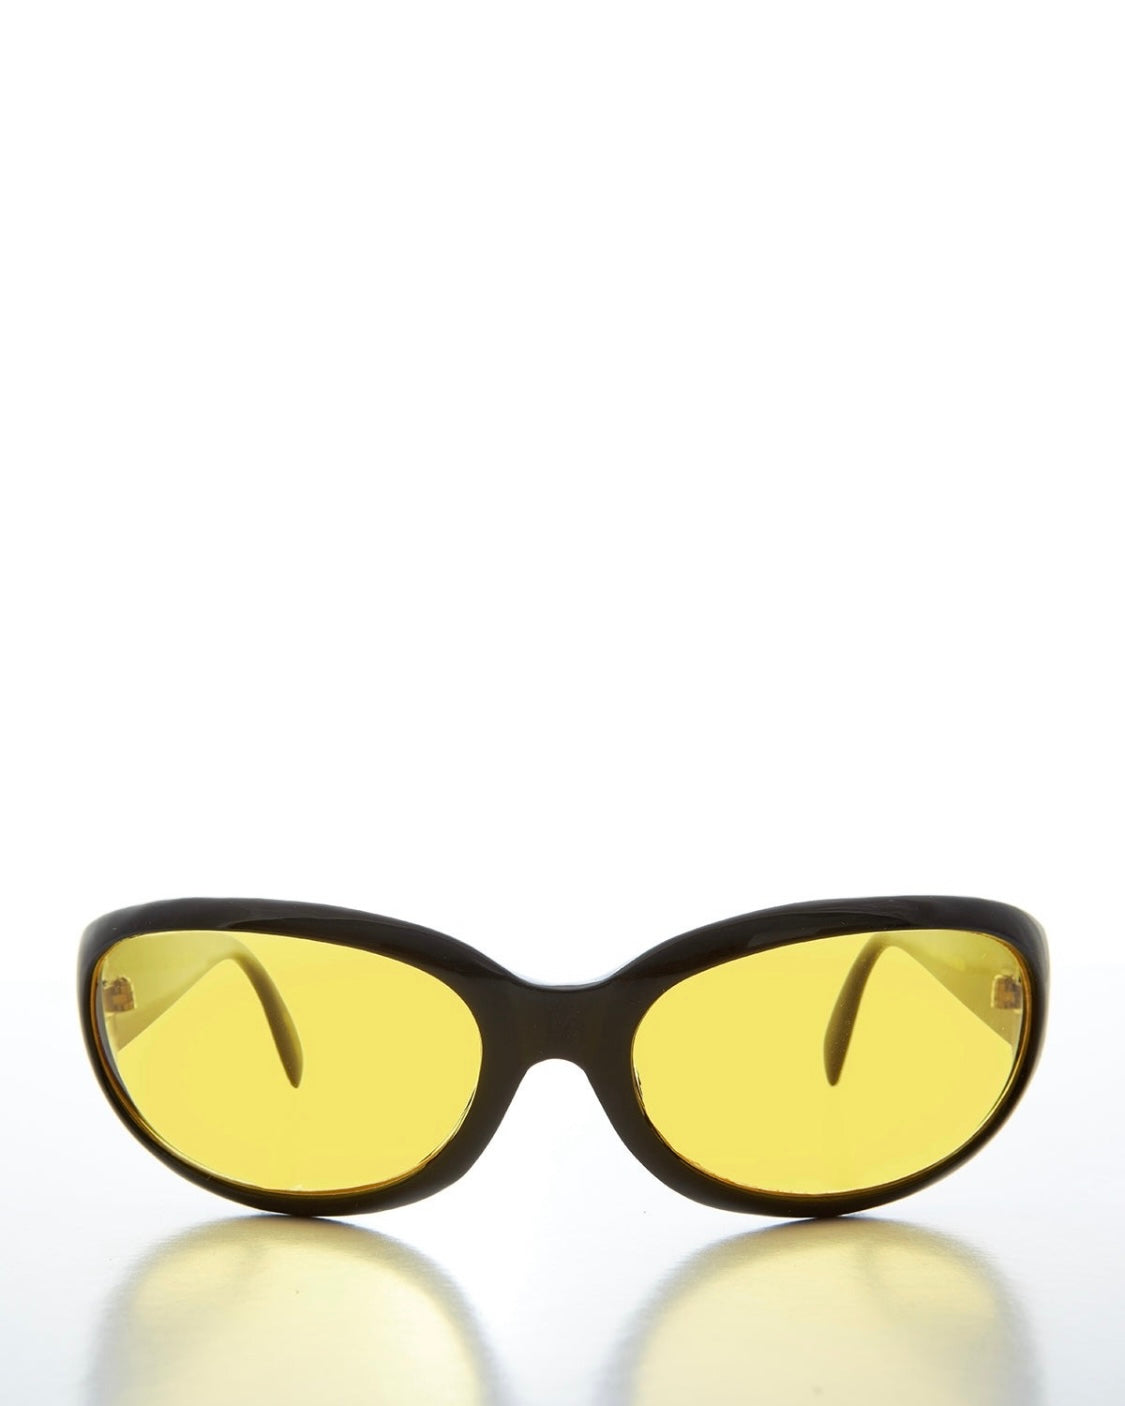 Sunglass Museum Wrap Around Vintage Sunglasses